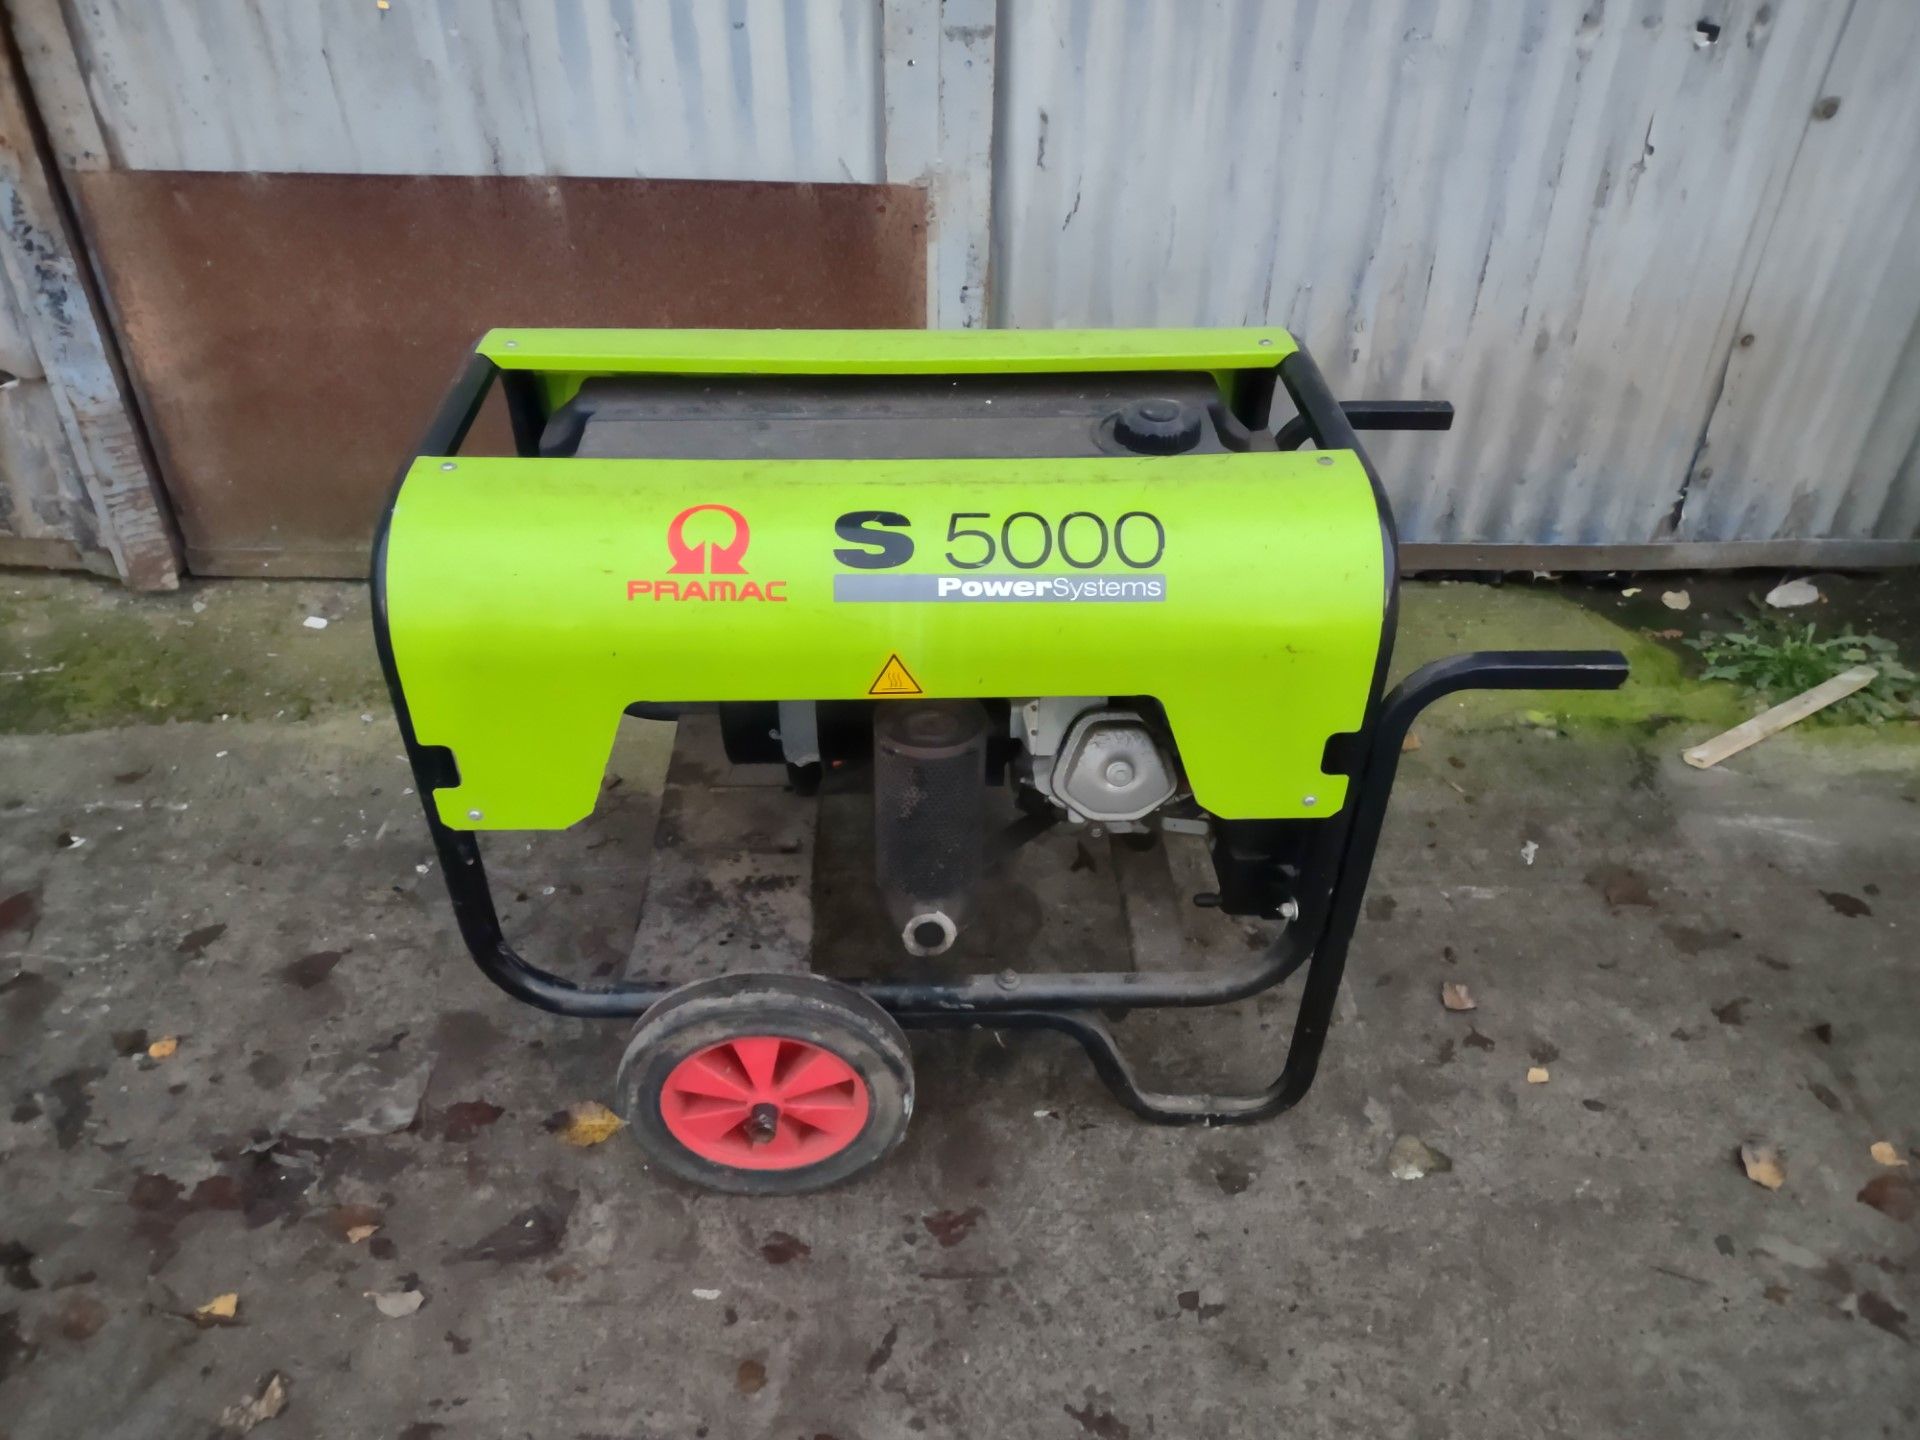 Pramac S5000 Petrol Generator £2000 RRP - untested